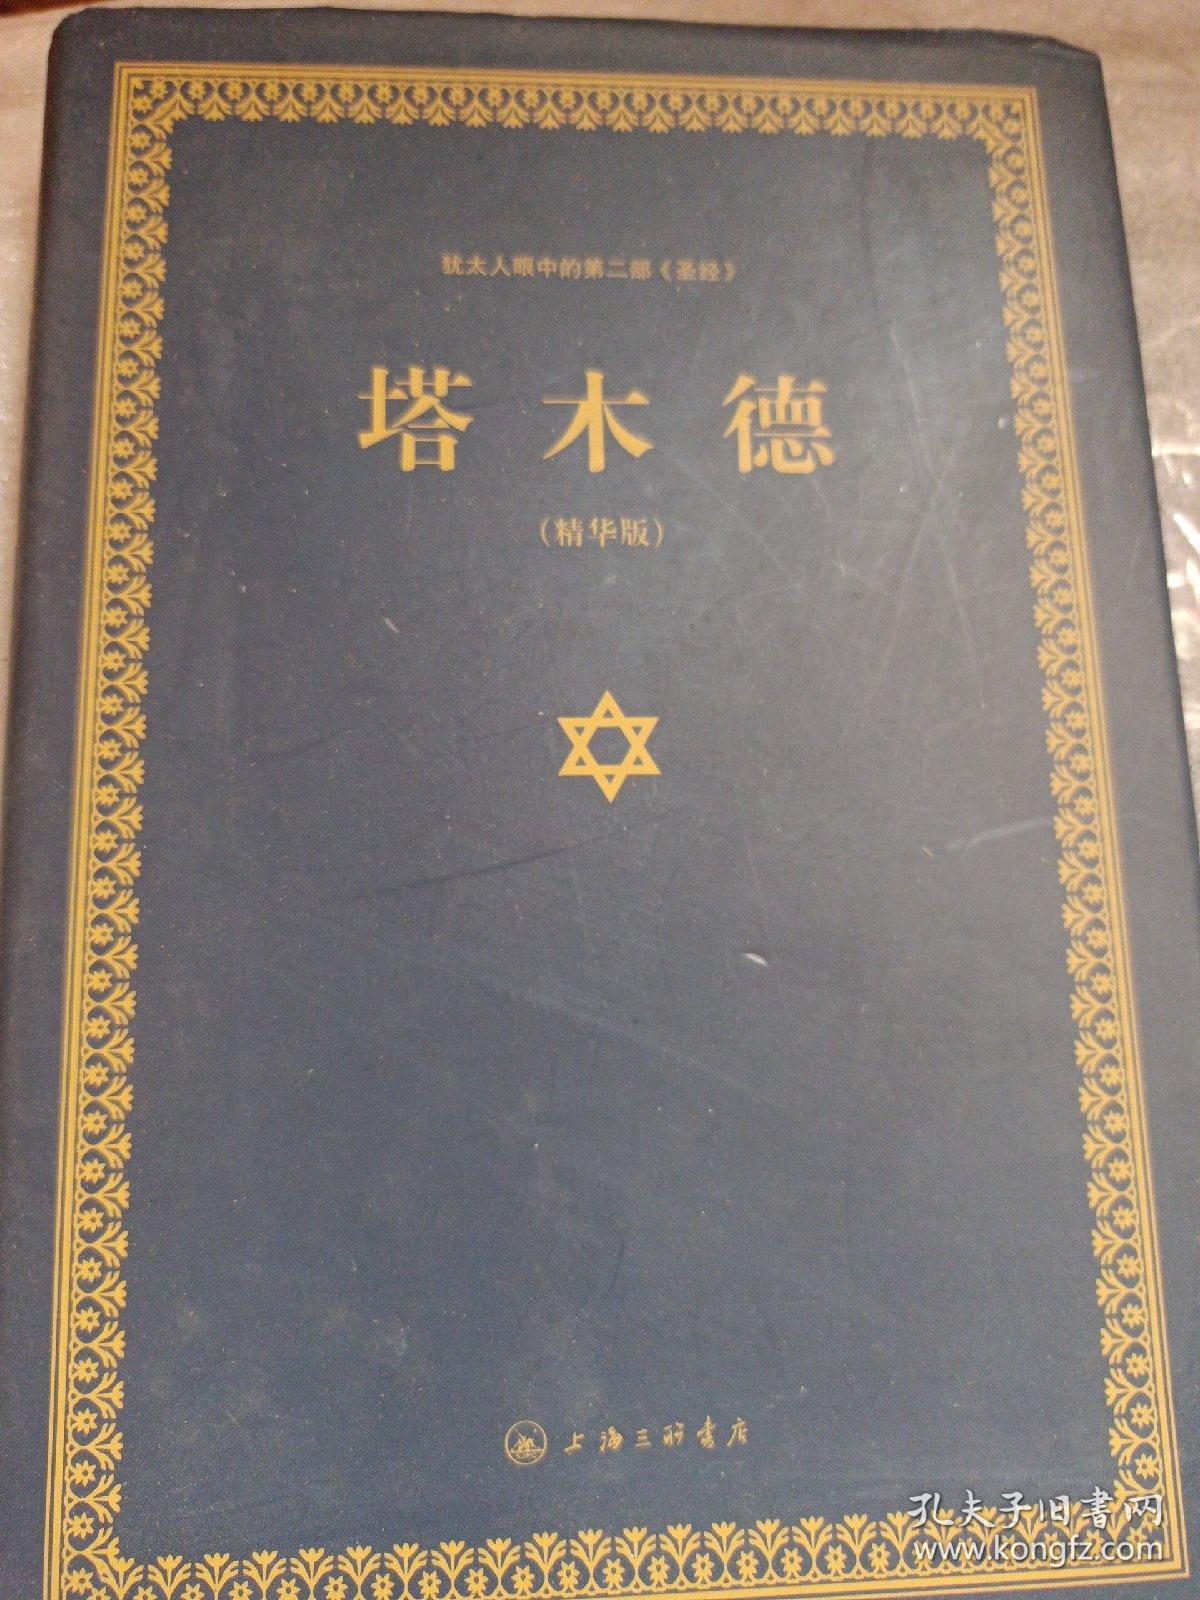 犹太人眼中的第二部 圣经：塔木德（精华版）上海三联书店 一版多印精装一厚本 贺雄飞出品